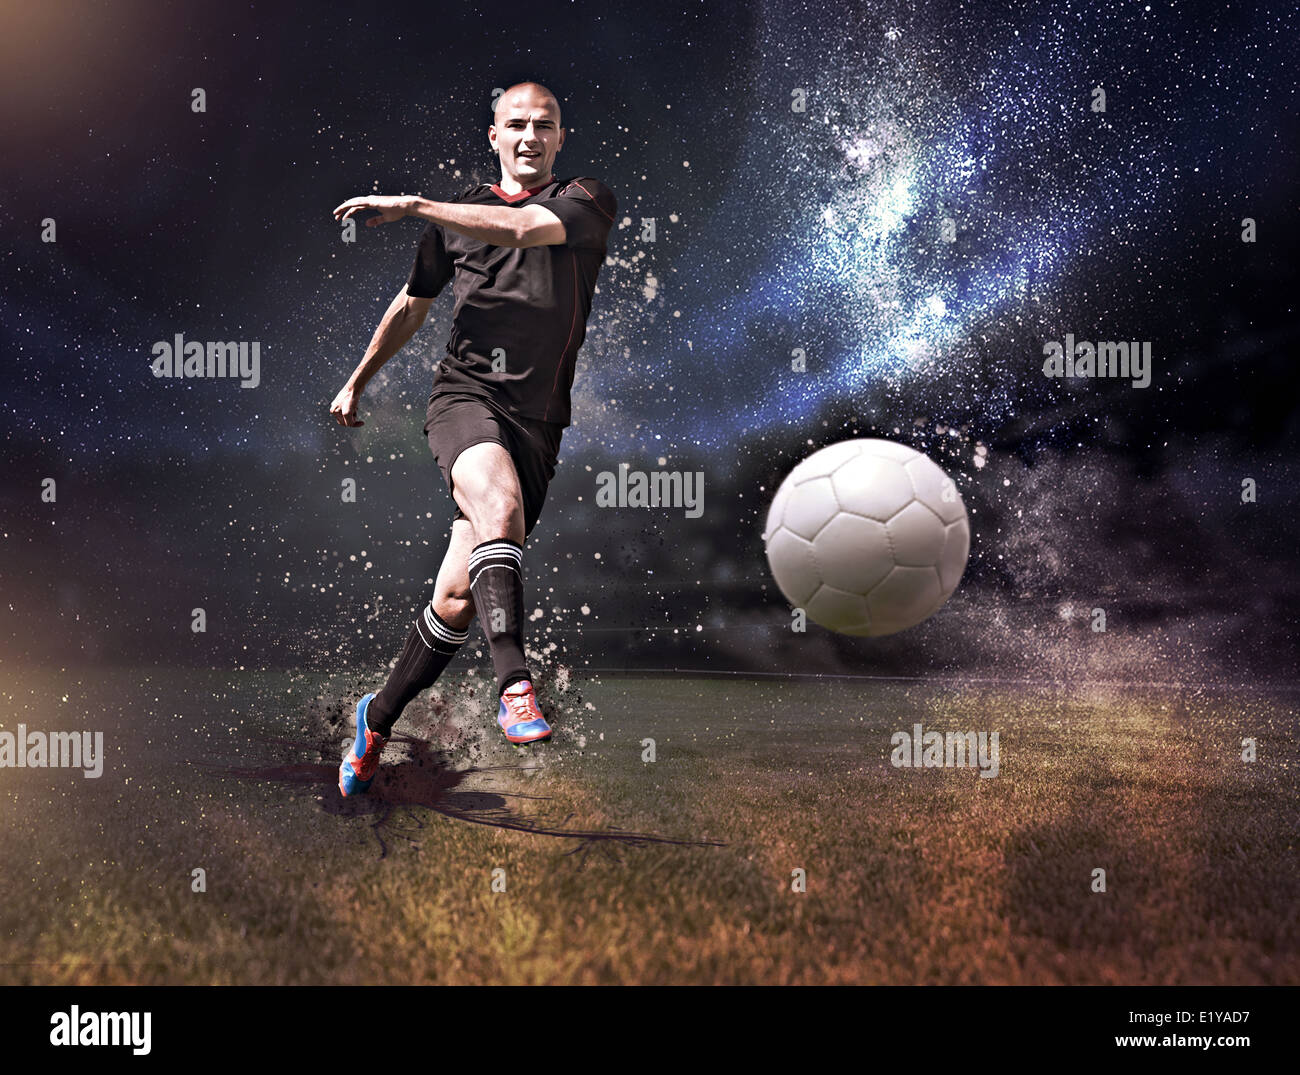 männlichen Fußball oder Fußball Spieler auf dem Feld Stockfoto